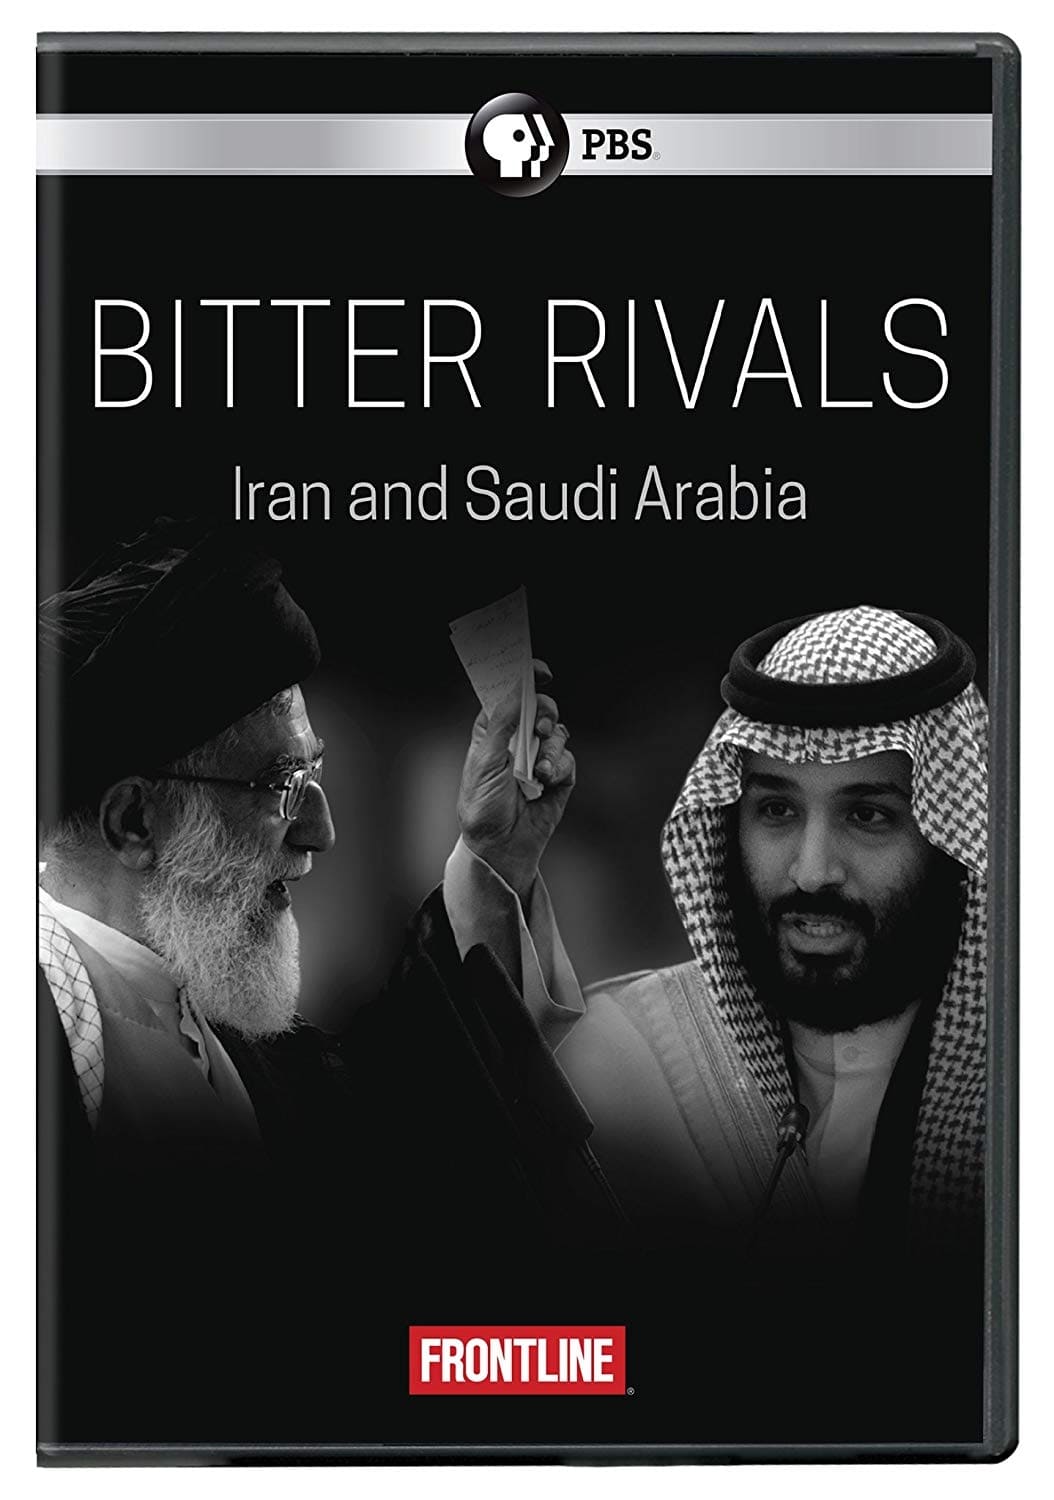 Öl, Macht und Religion – Saudi-Arabien und der Iran (2018)